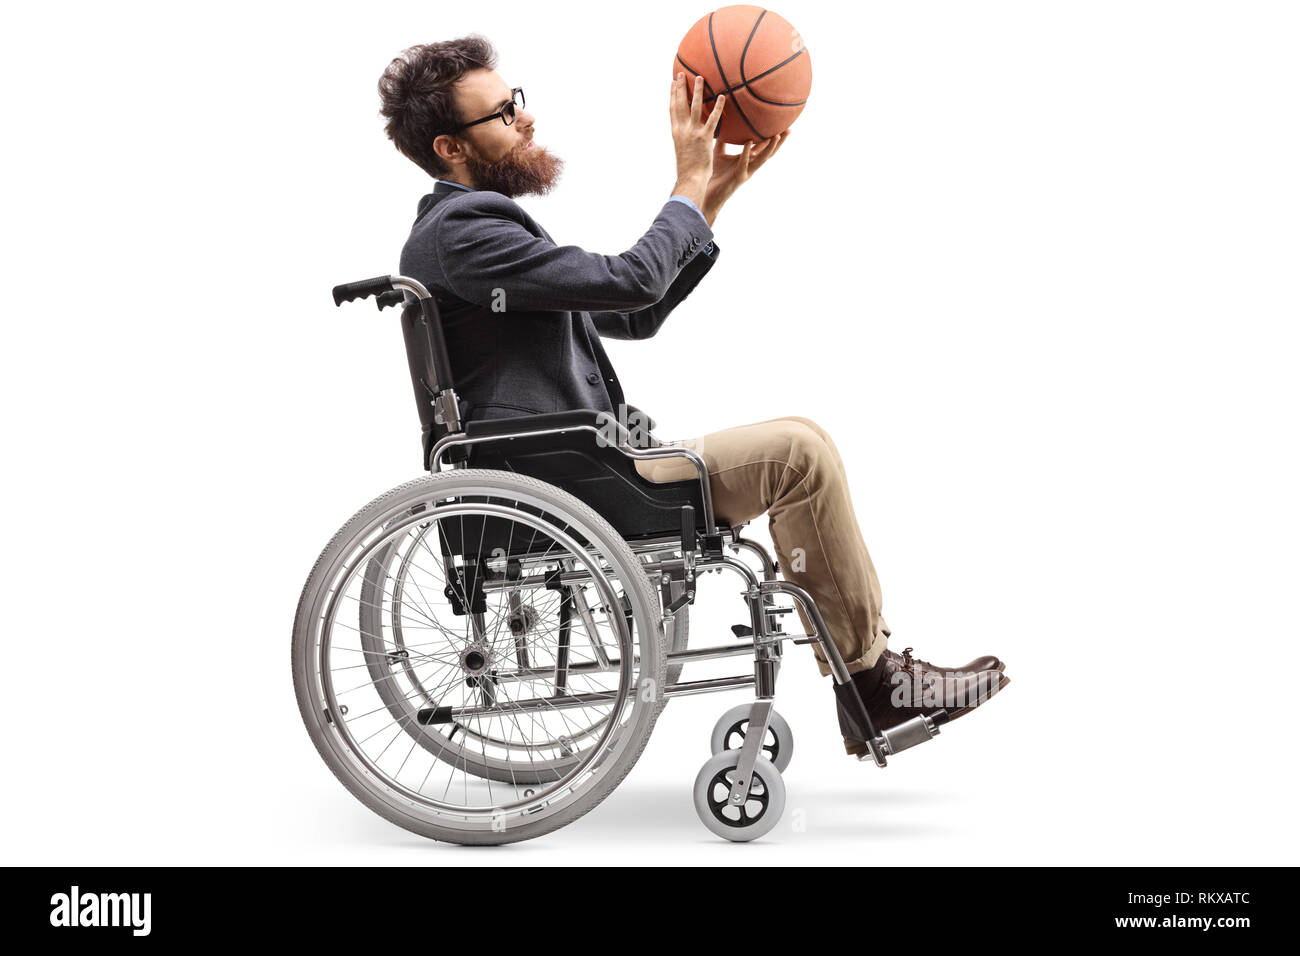 Volle Länge Profil geschossen von einem jungen Mann im Rollstuhl mit einem Basketball auf weißem Hintergrund Stockfoto